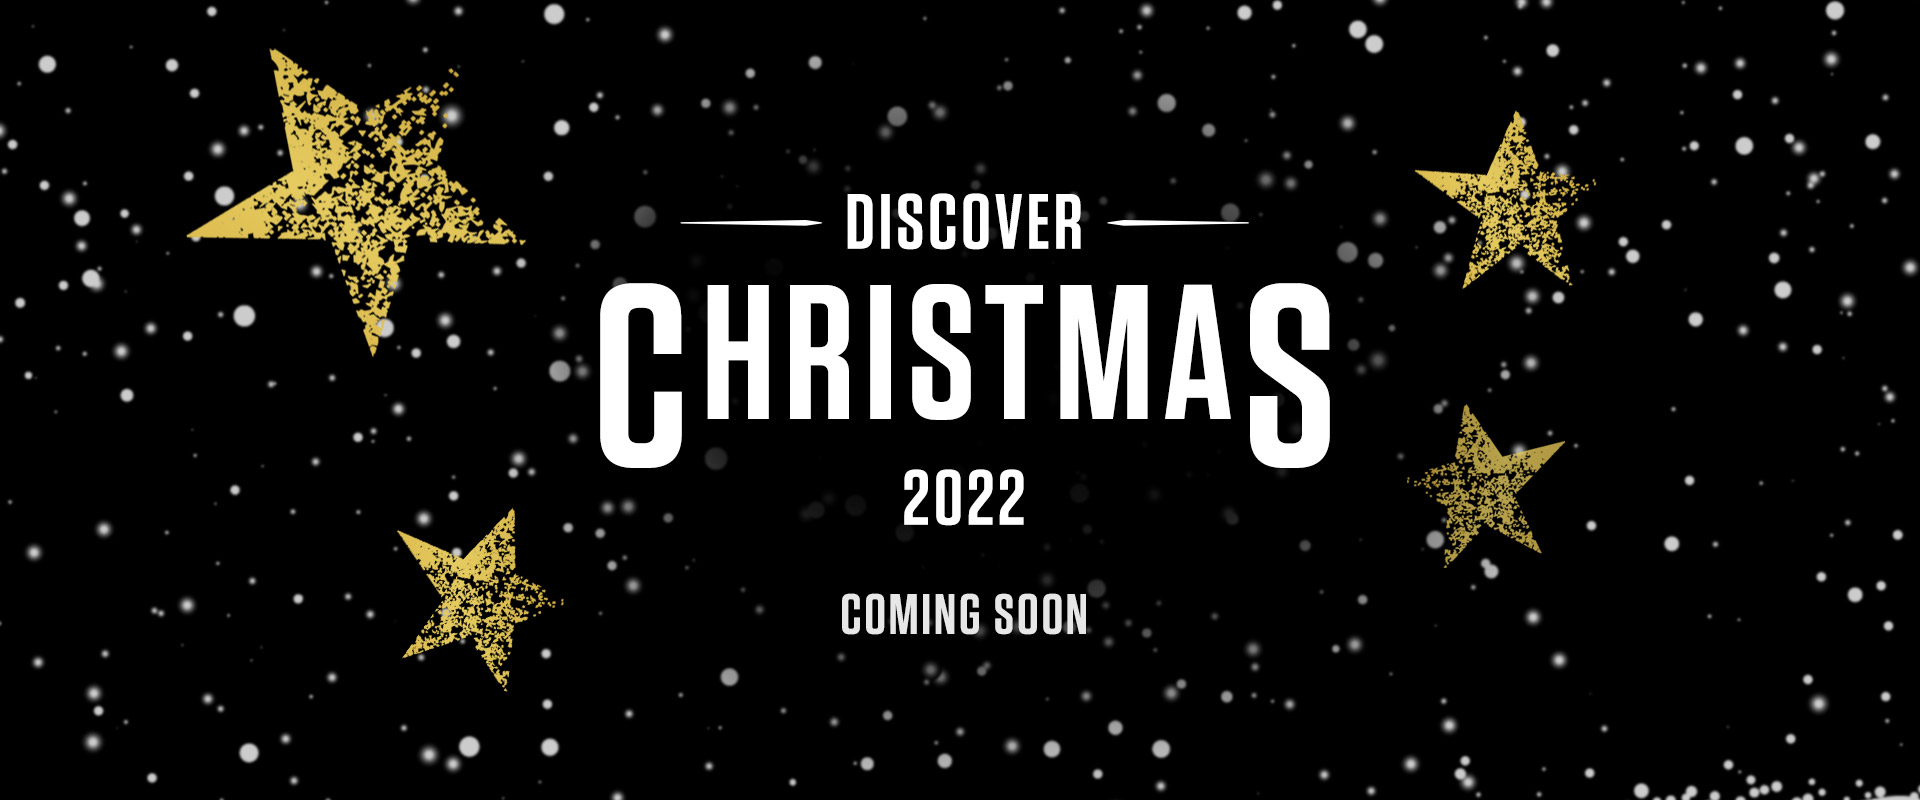 brasshaus-postchristmas-2022-banner.jpg